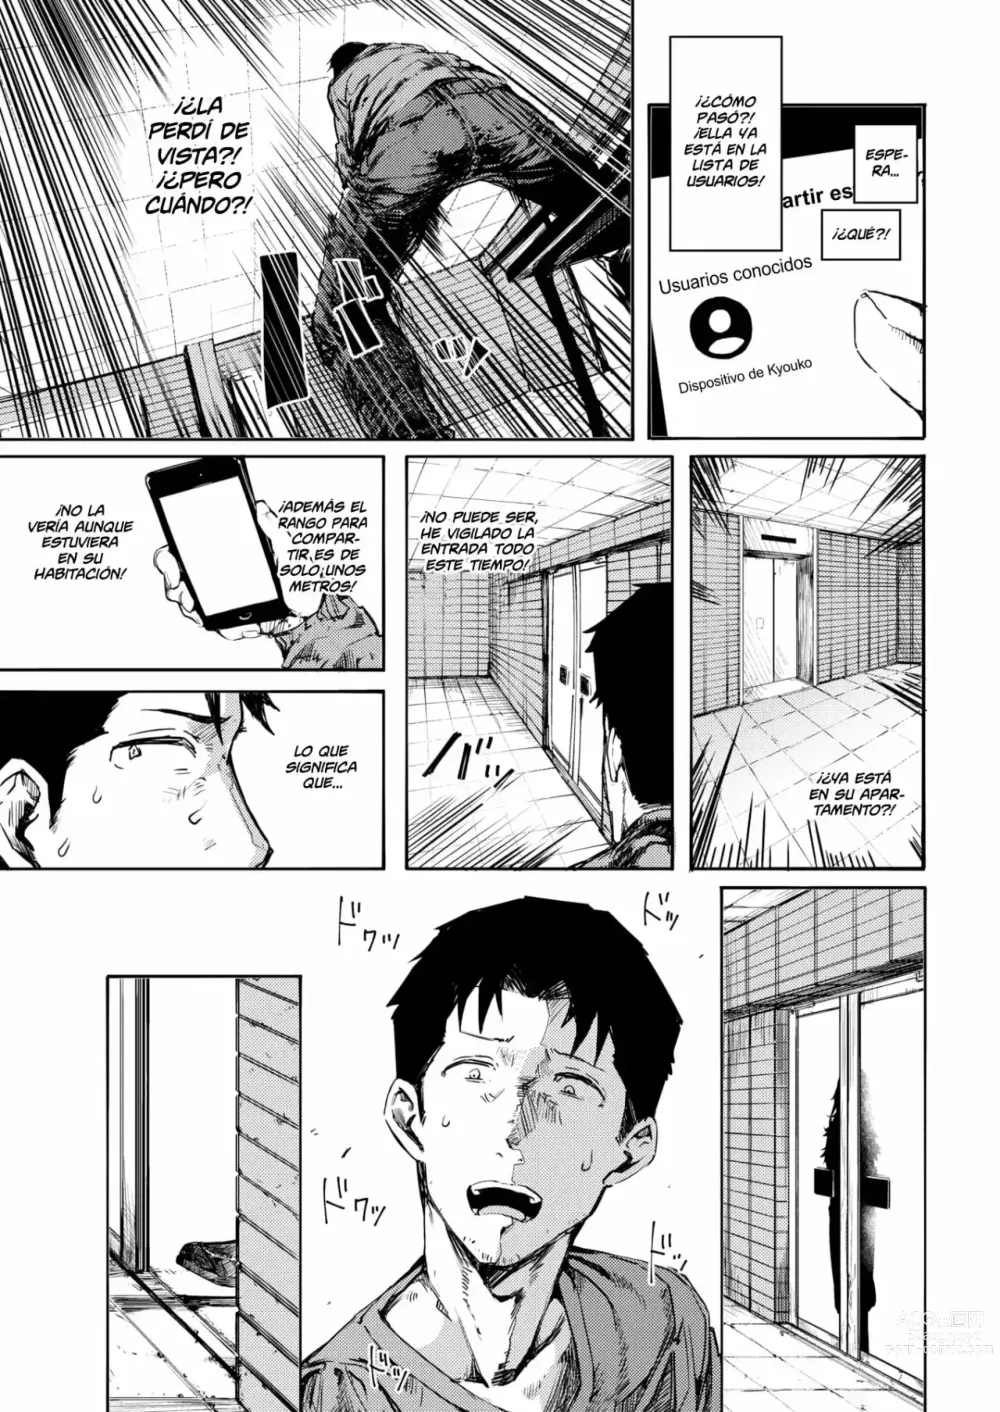 Page 7 of doujinshi Perdon foto equivocada